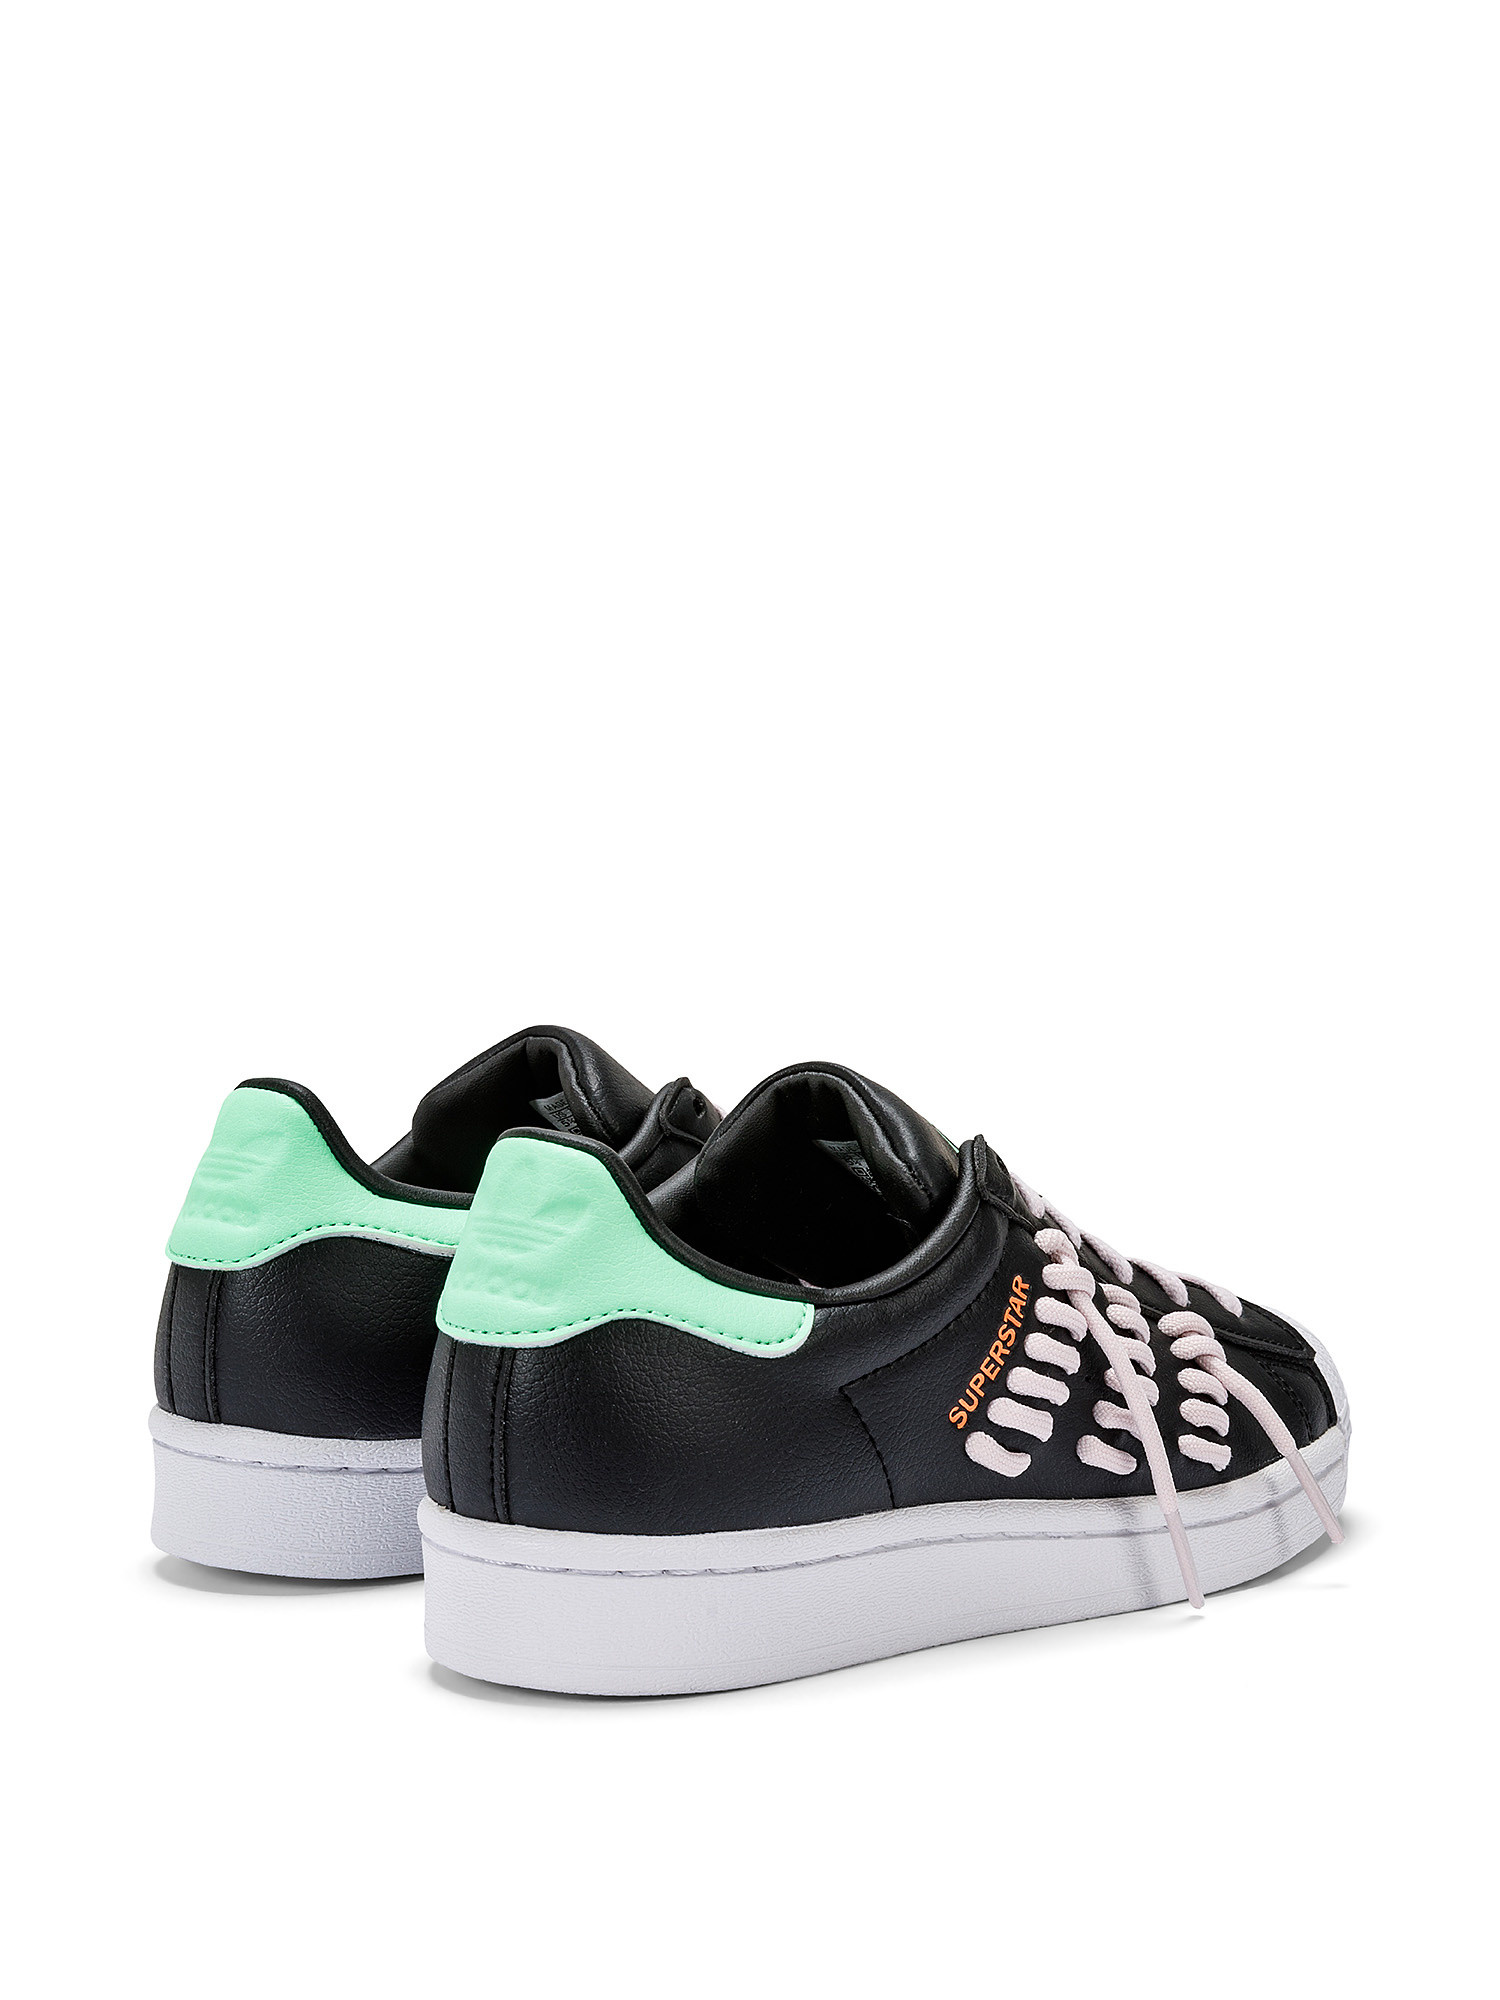 Adidas - Superstar Shoes, Black, large image number 2